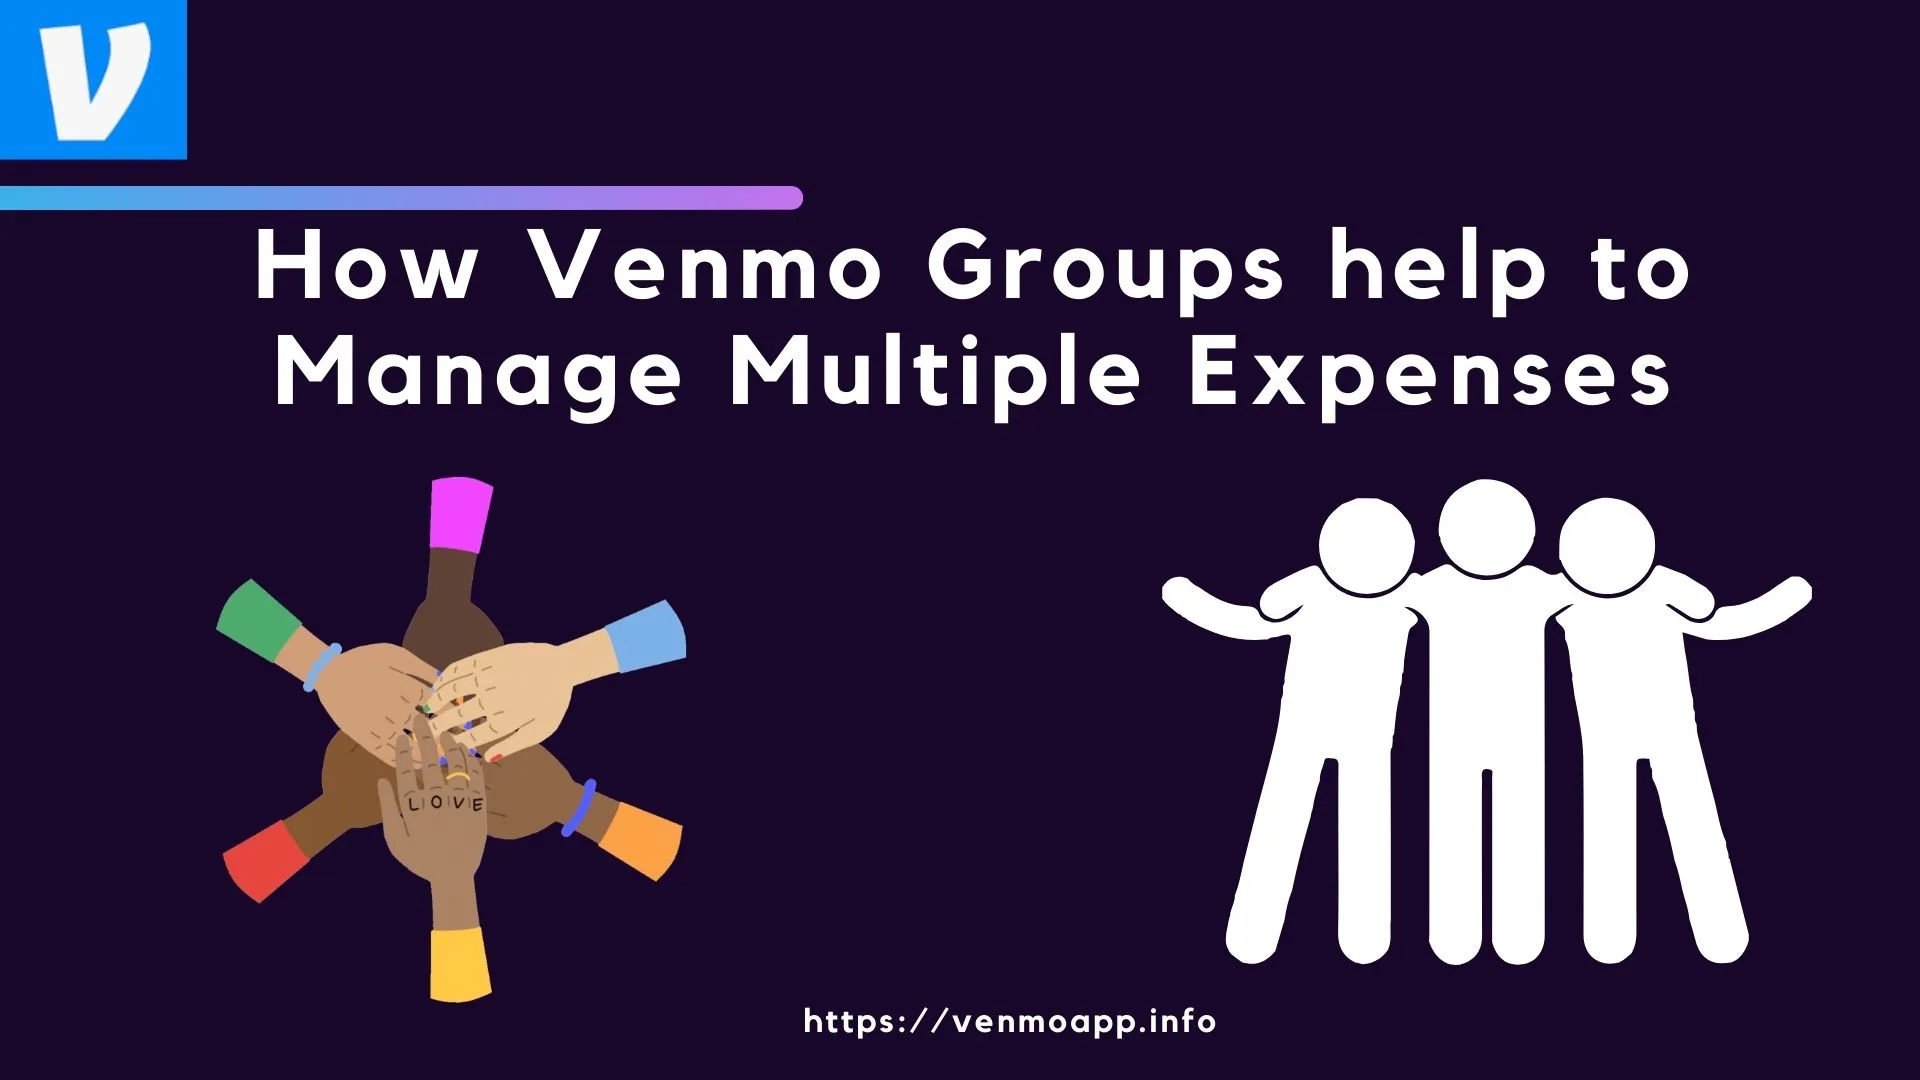 Venmo Groups